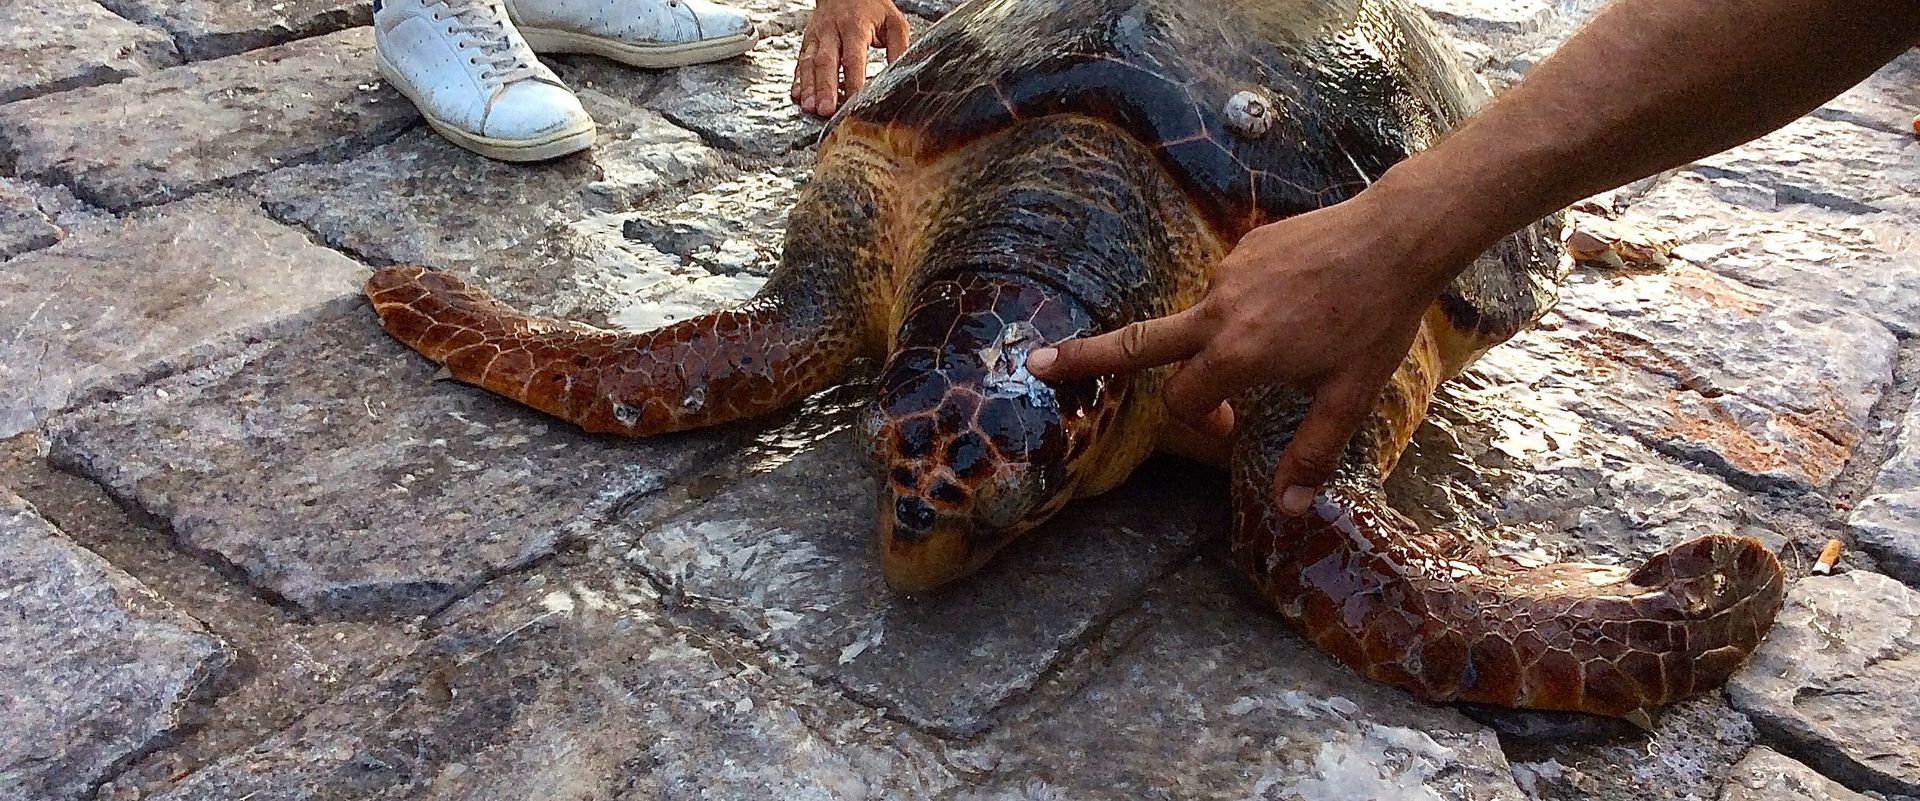 Caretta Caretta Loggerhead Sea Turtle Injured and Rescued in Hydra Harbour